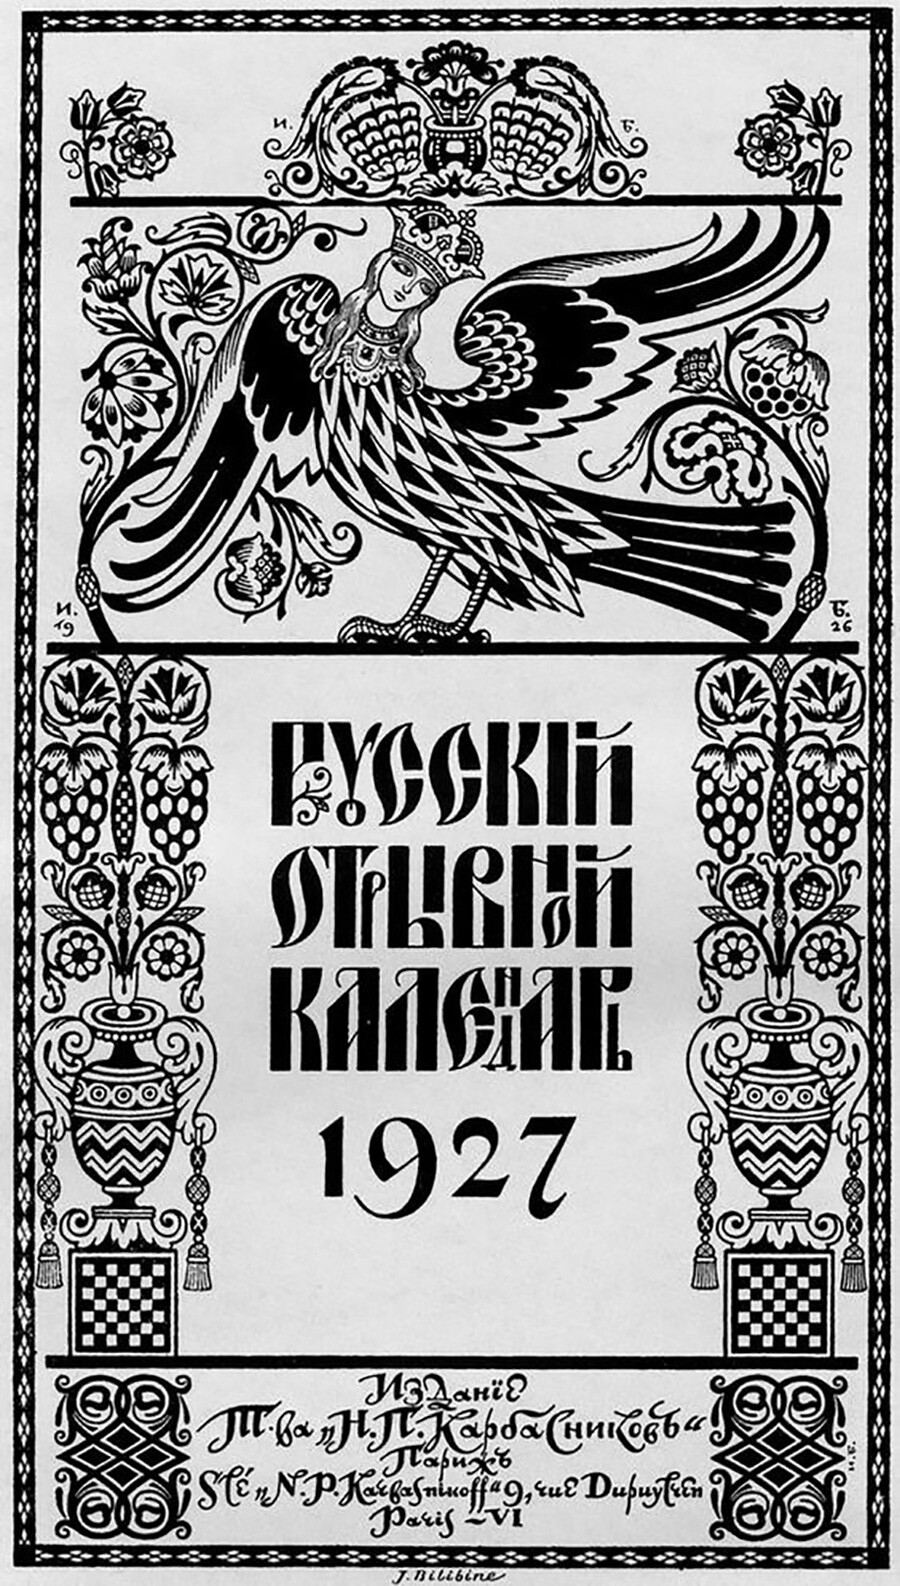 Calendario russo del 1927, I. Bilibin